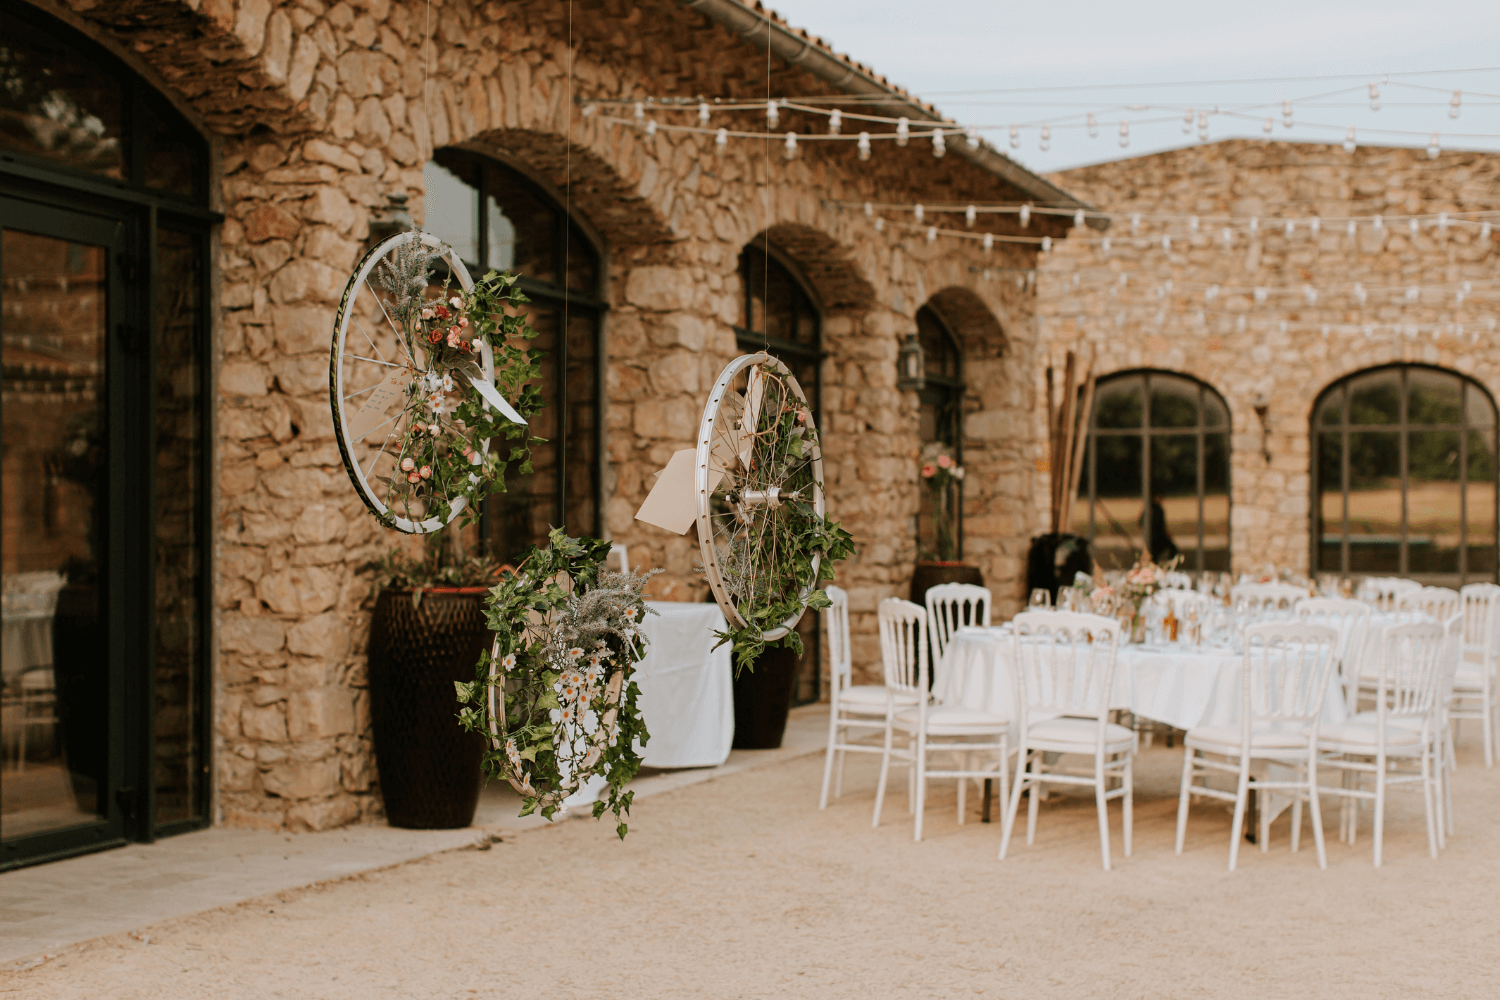 Un lieu de réception de mariage extérieur avec chaises et tables blanches, aux côtés d'une maison de pierres.